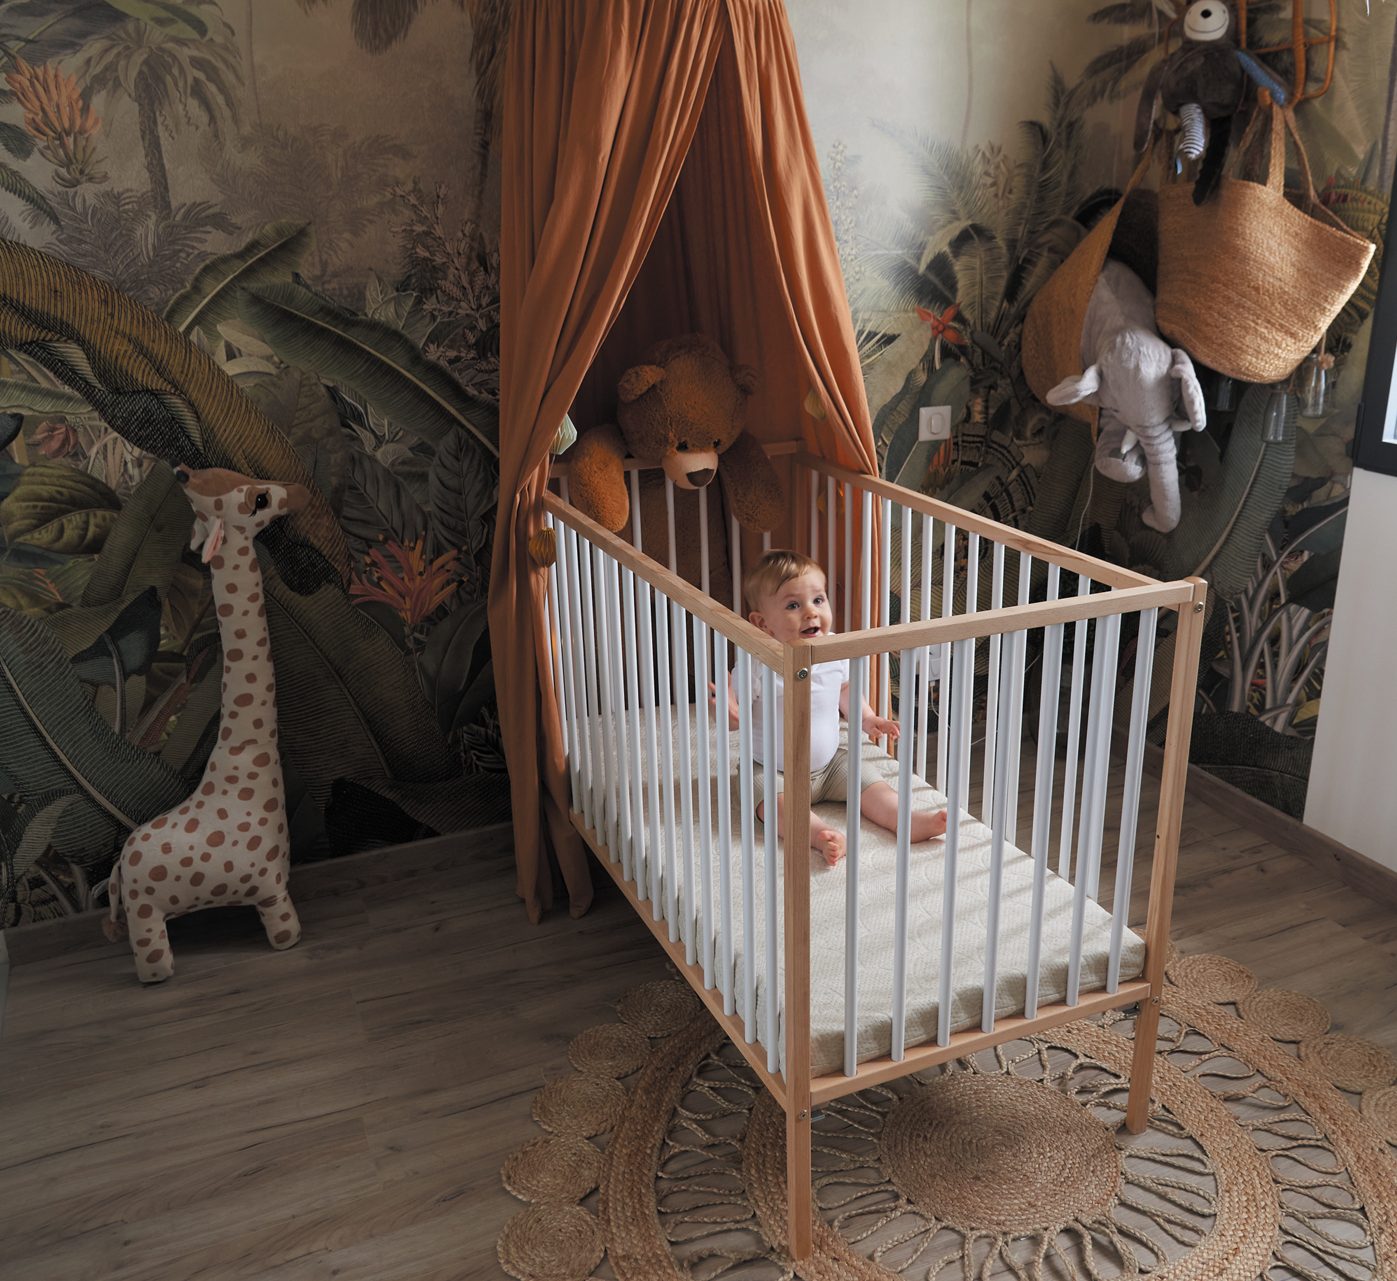 Idées décoration pour la chambre de bébé